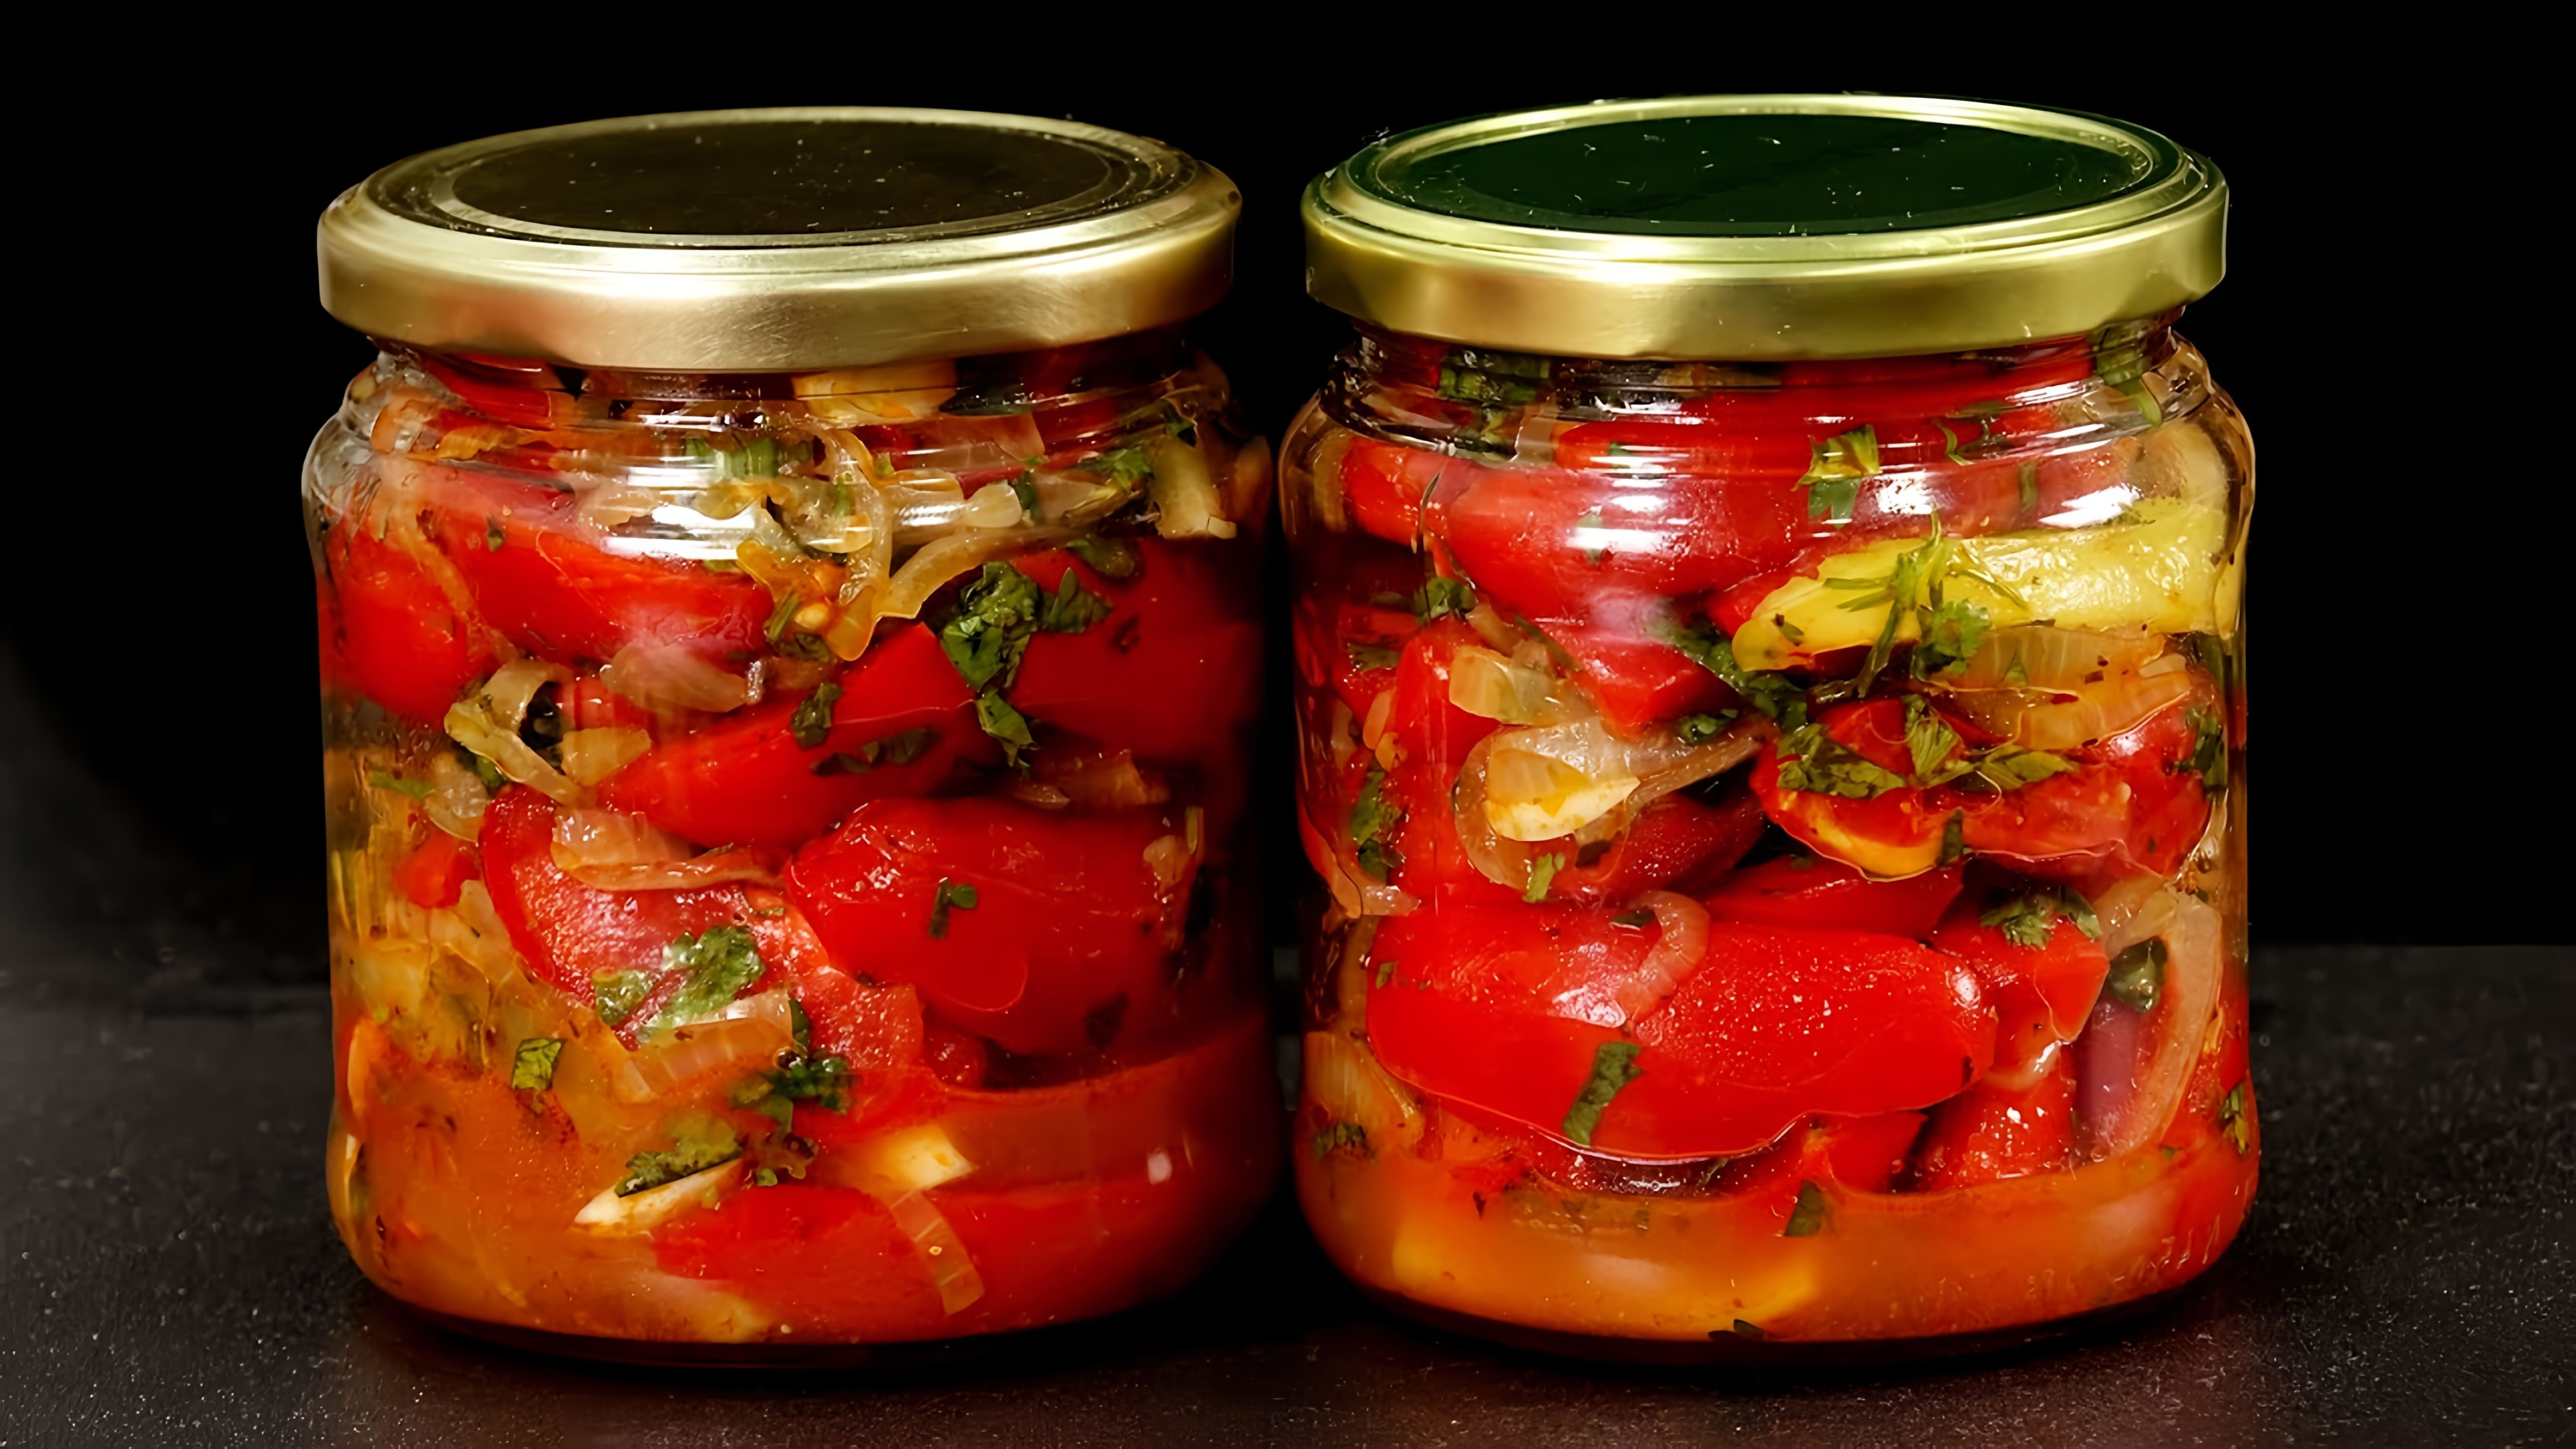 Видео представляет 5 рецептов закусок из помидоров, которые можно быстро и недорого приготовить